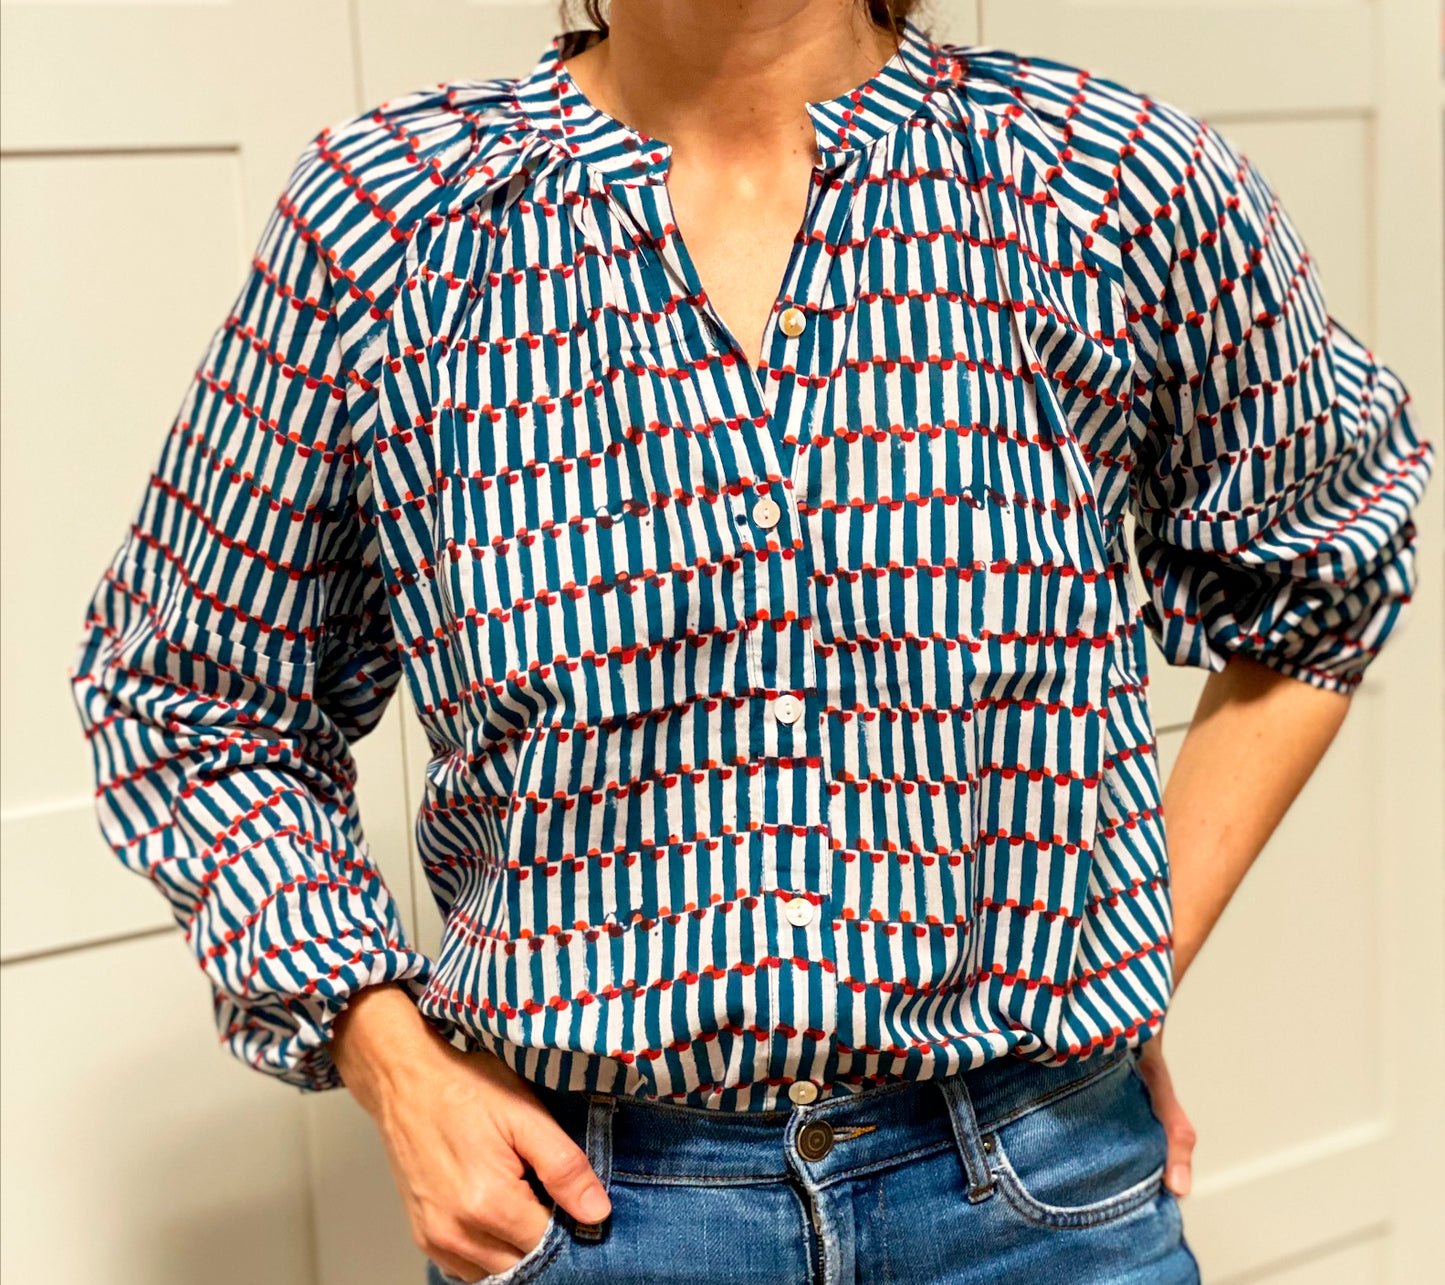 camisa étnica o blusa de algodón estampada para verano. tiene print indio y es de color azul, blanco y rojo. blue, white and red ethnic indian print cotton blouse